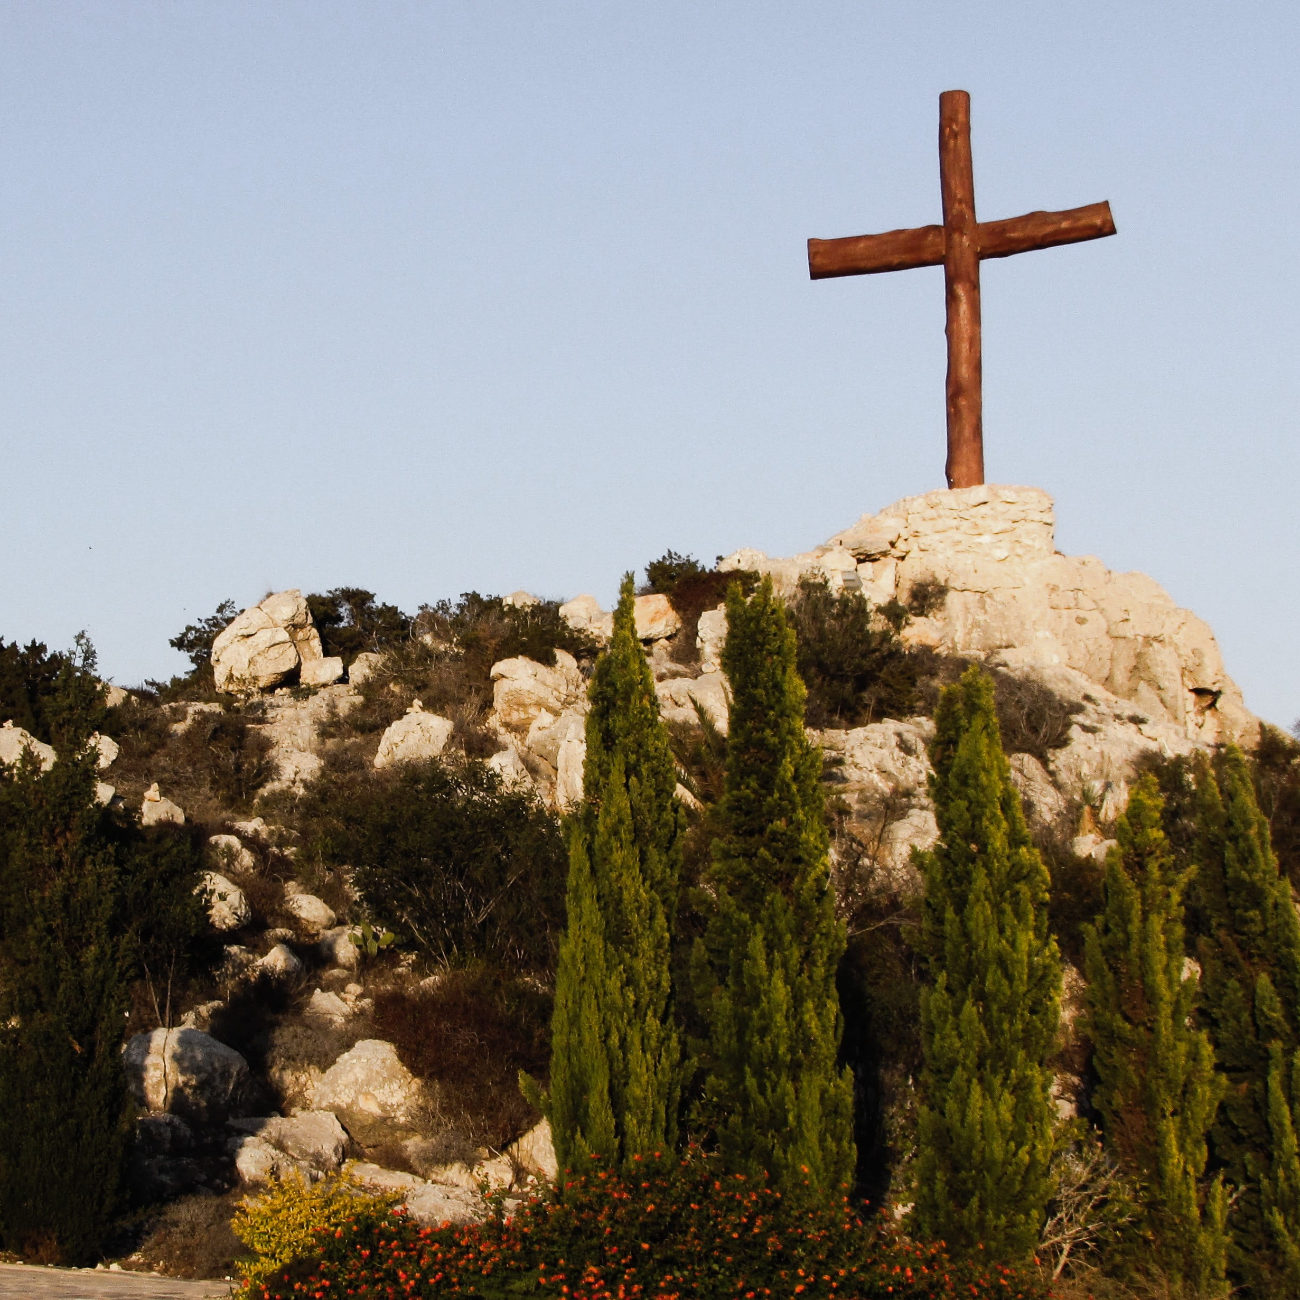 Une croix en bois surmonte une colline rocheuse, sur fond de ciel bleu. La colline est parsemée d'arbres.